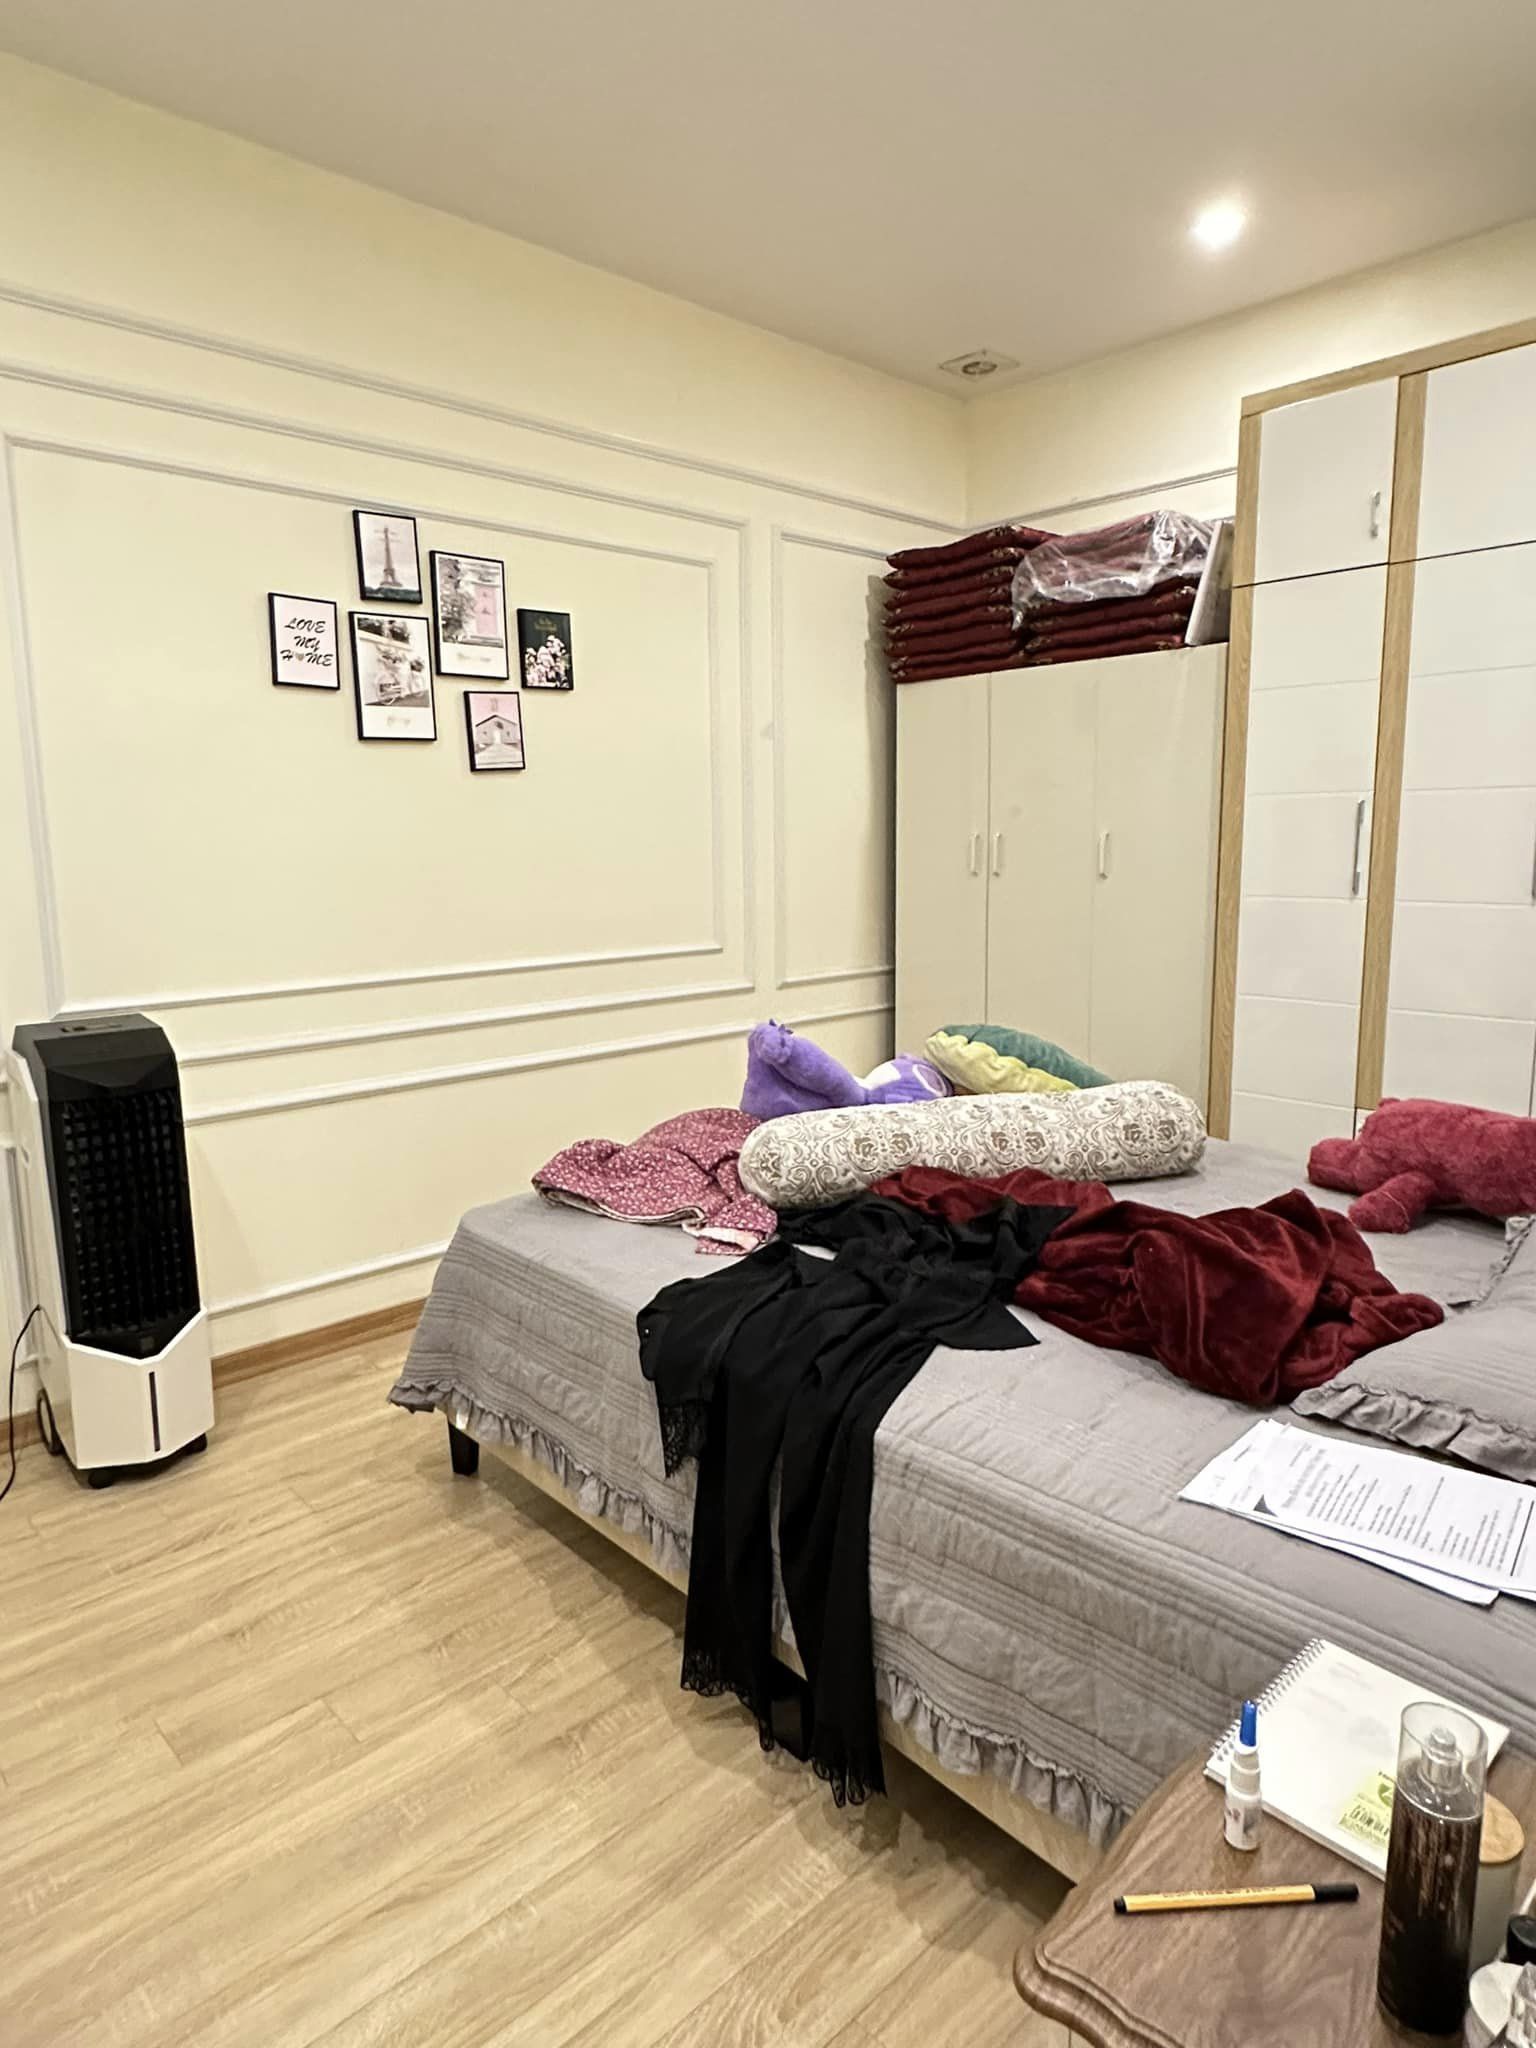 Bán chung cư cao cấp Trung Hòa Cầu Giấy nội thất siêu đẹp mua là ở ngay - Ảnh 3